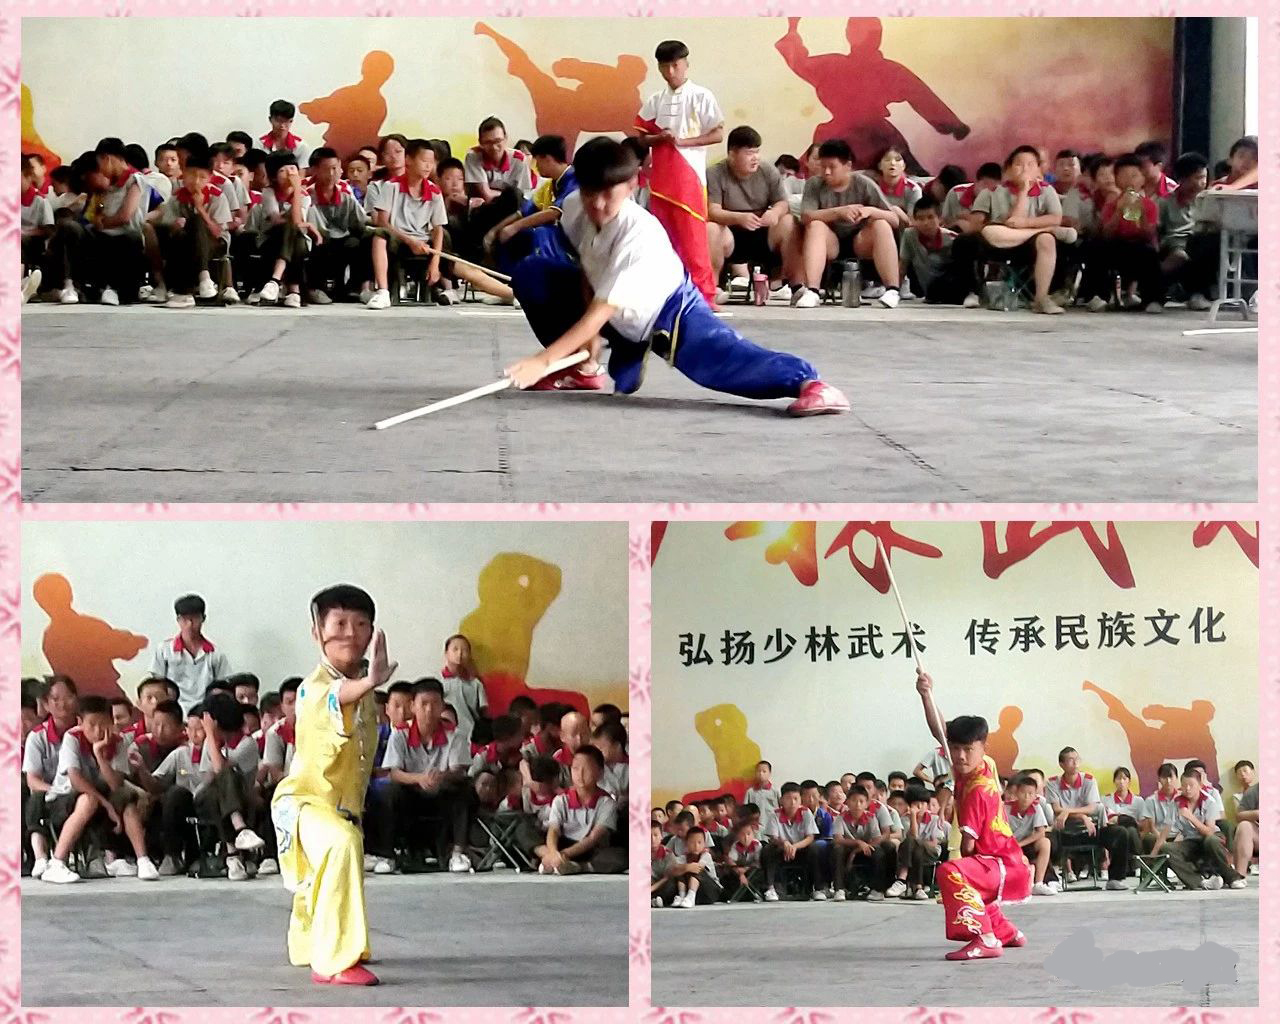 少林寺武术学校的学员在练习武术